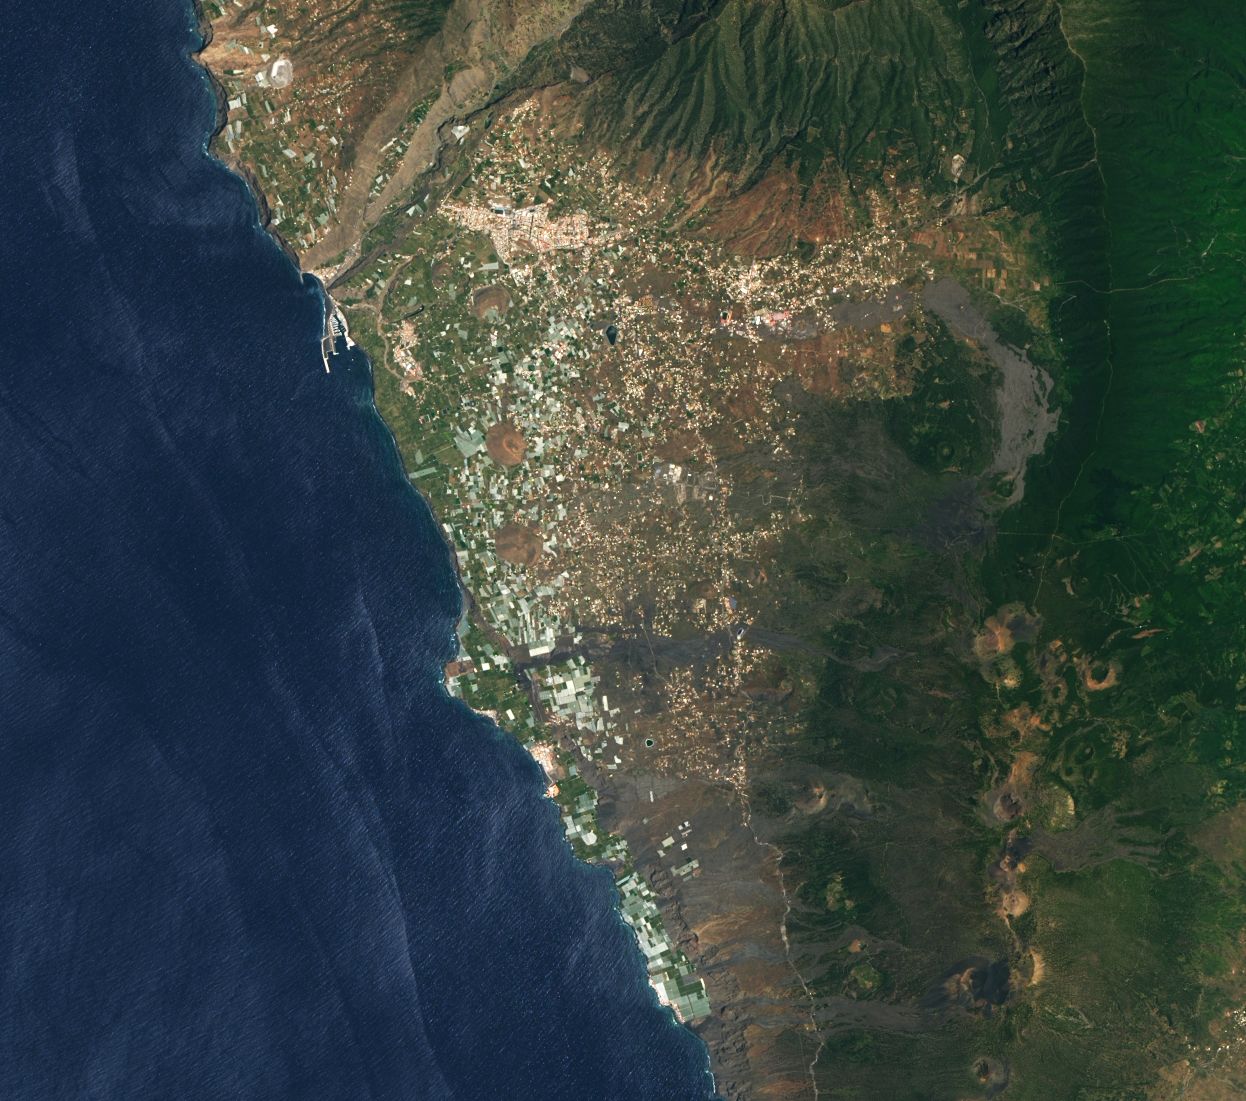 Imágenes del satélite Landsat de la NASA en las que se muestran los cambios experimentados en el oeste de de La Palma, tras tres meses de erupción volcánica.